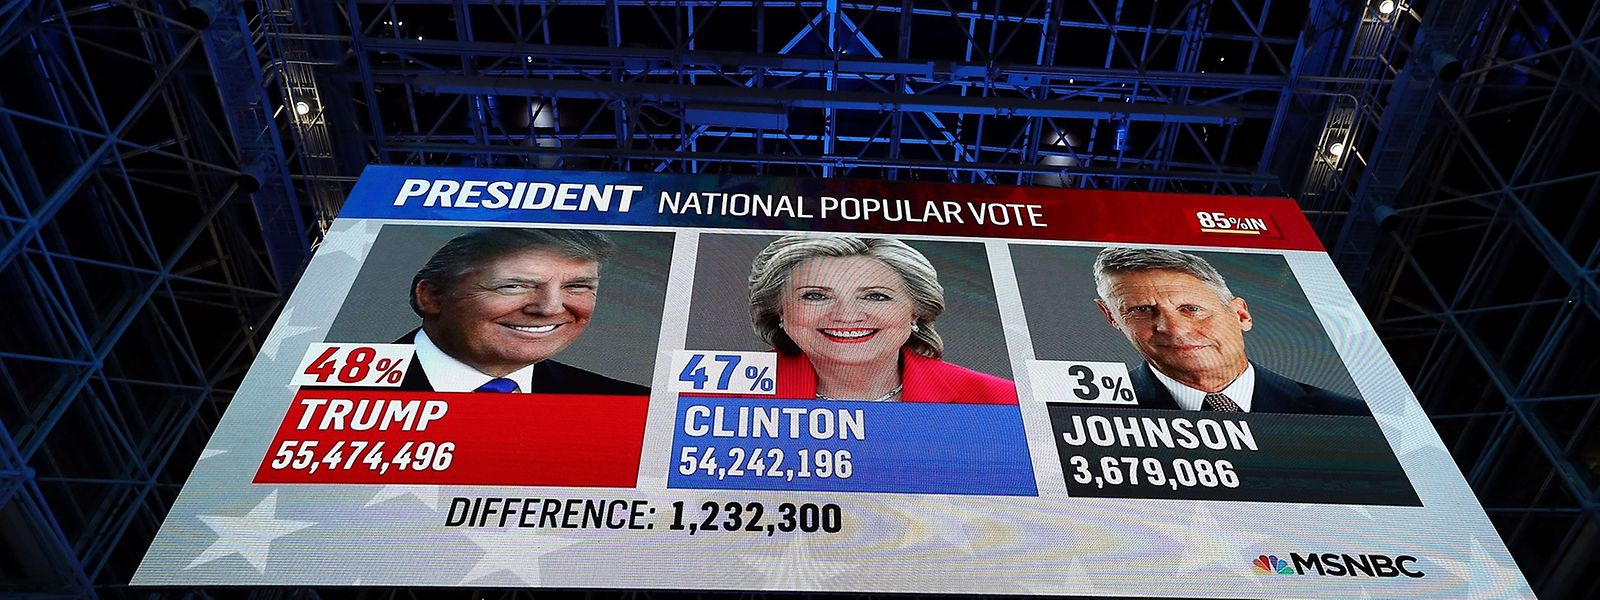 Die "popular vote" während der Auszählung. Am Ende gewann hier Clinton - nur nützte es ihr nichts.